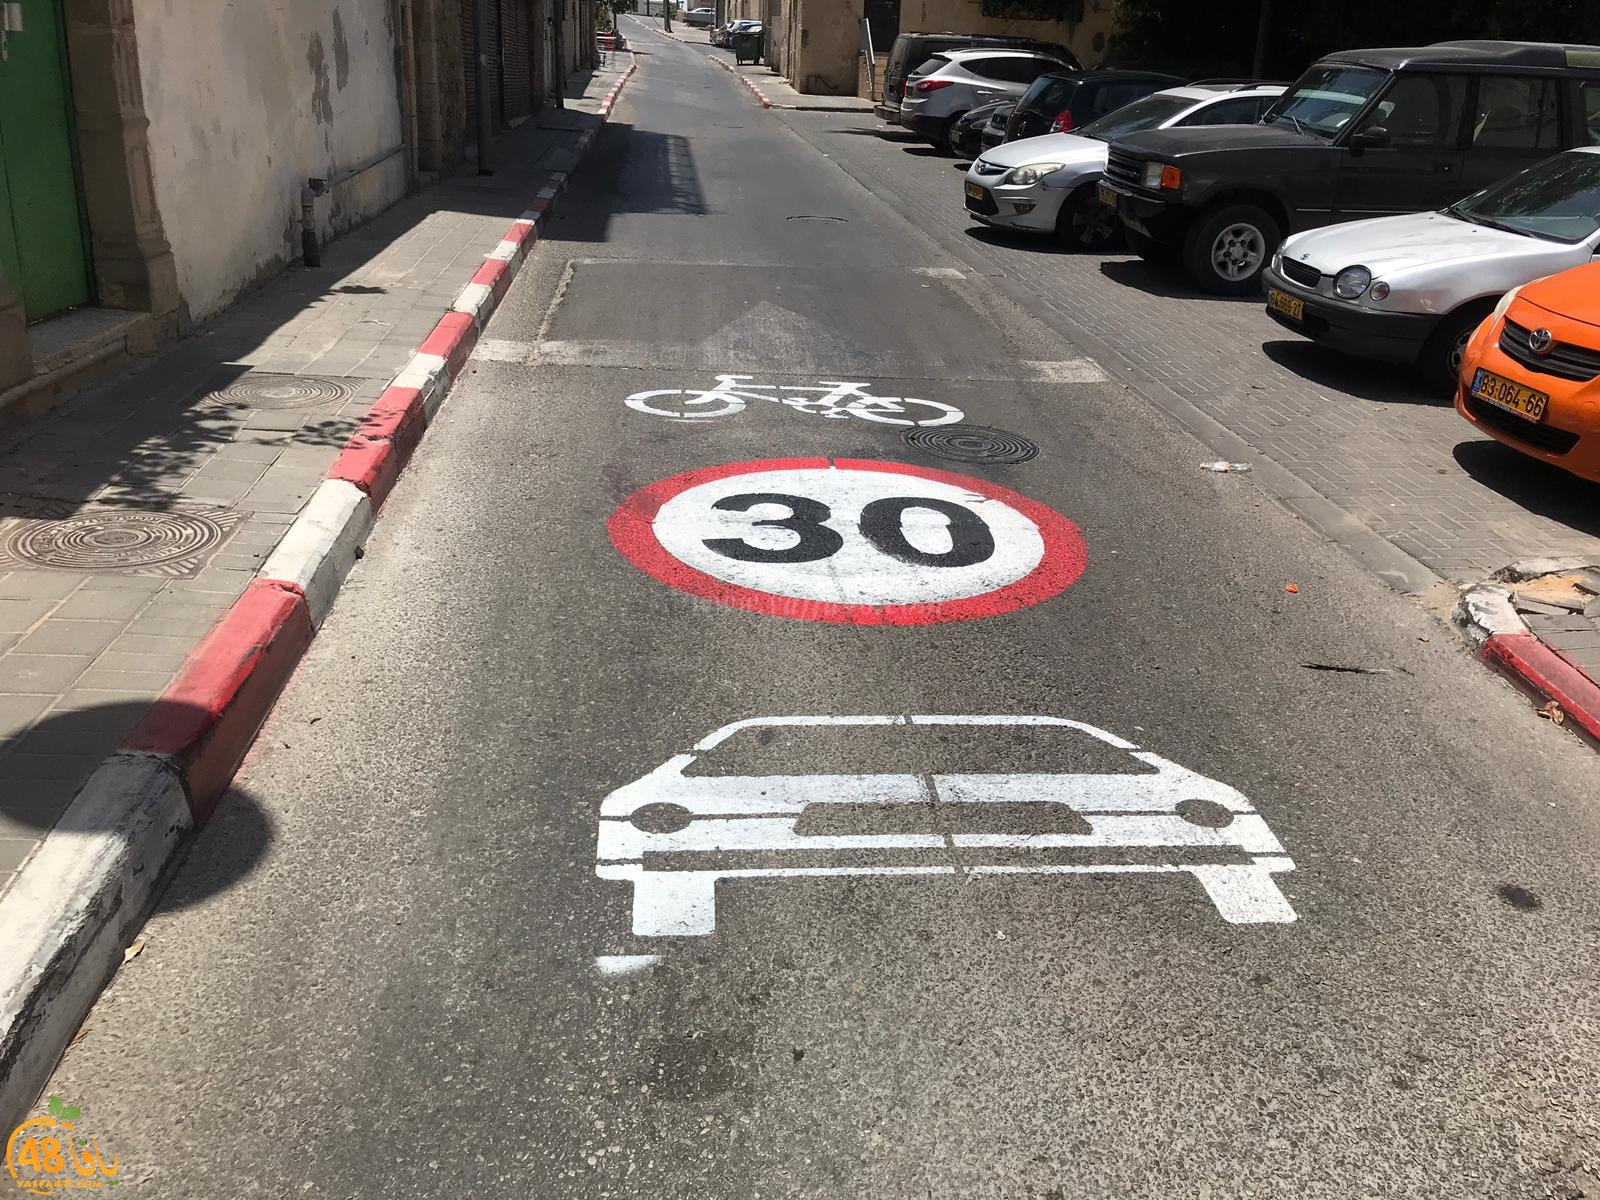 للحد من حوادث الدراجات - رسومات لتحديد السرعات المسموح بها داخل الأحياء بيافا 